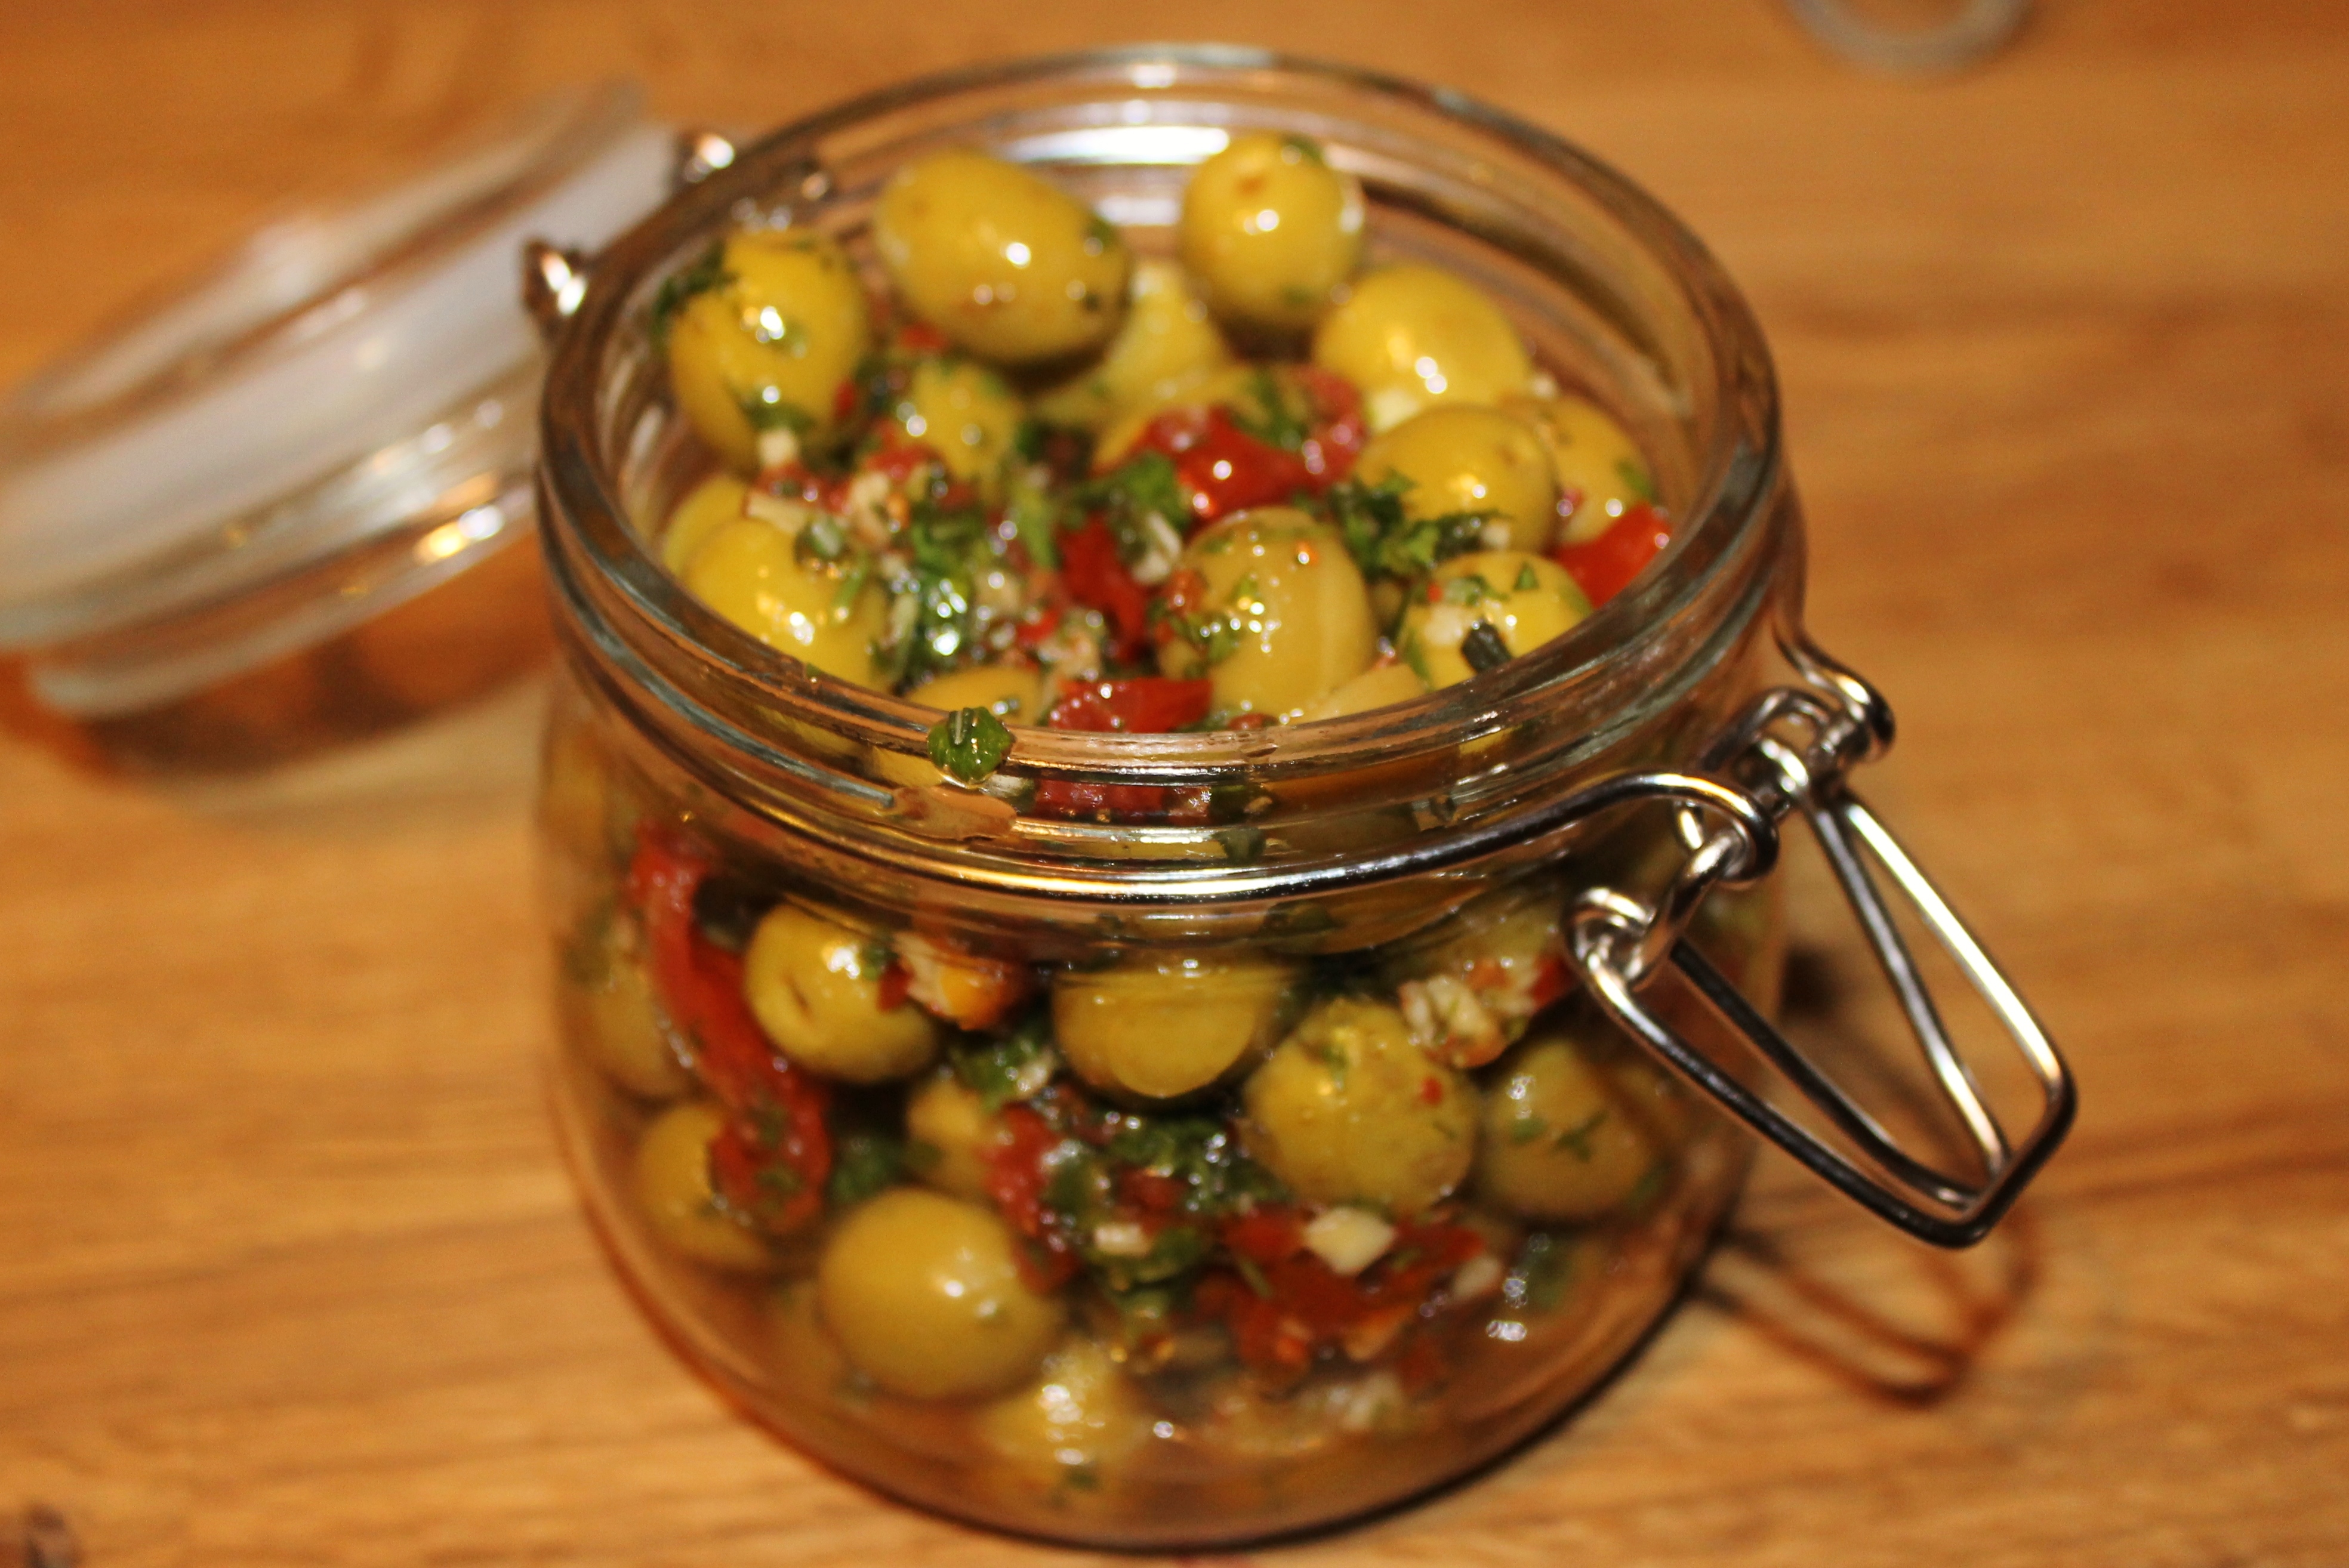 Résultat de recherche d'images pour "marinated olives"